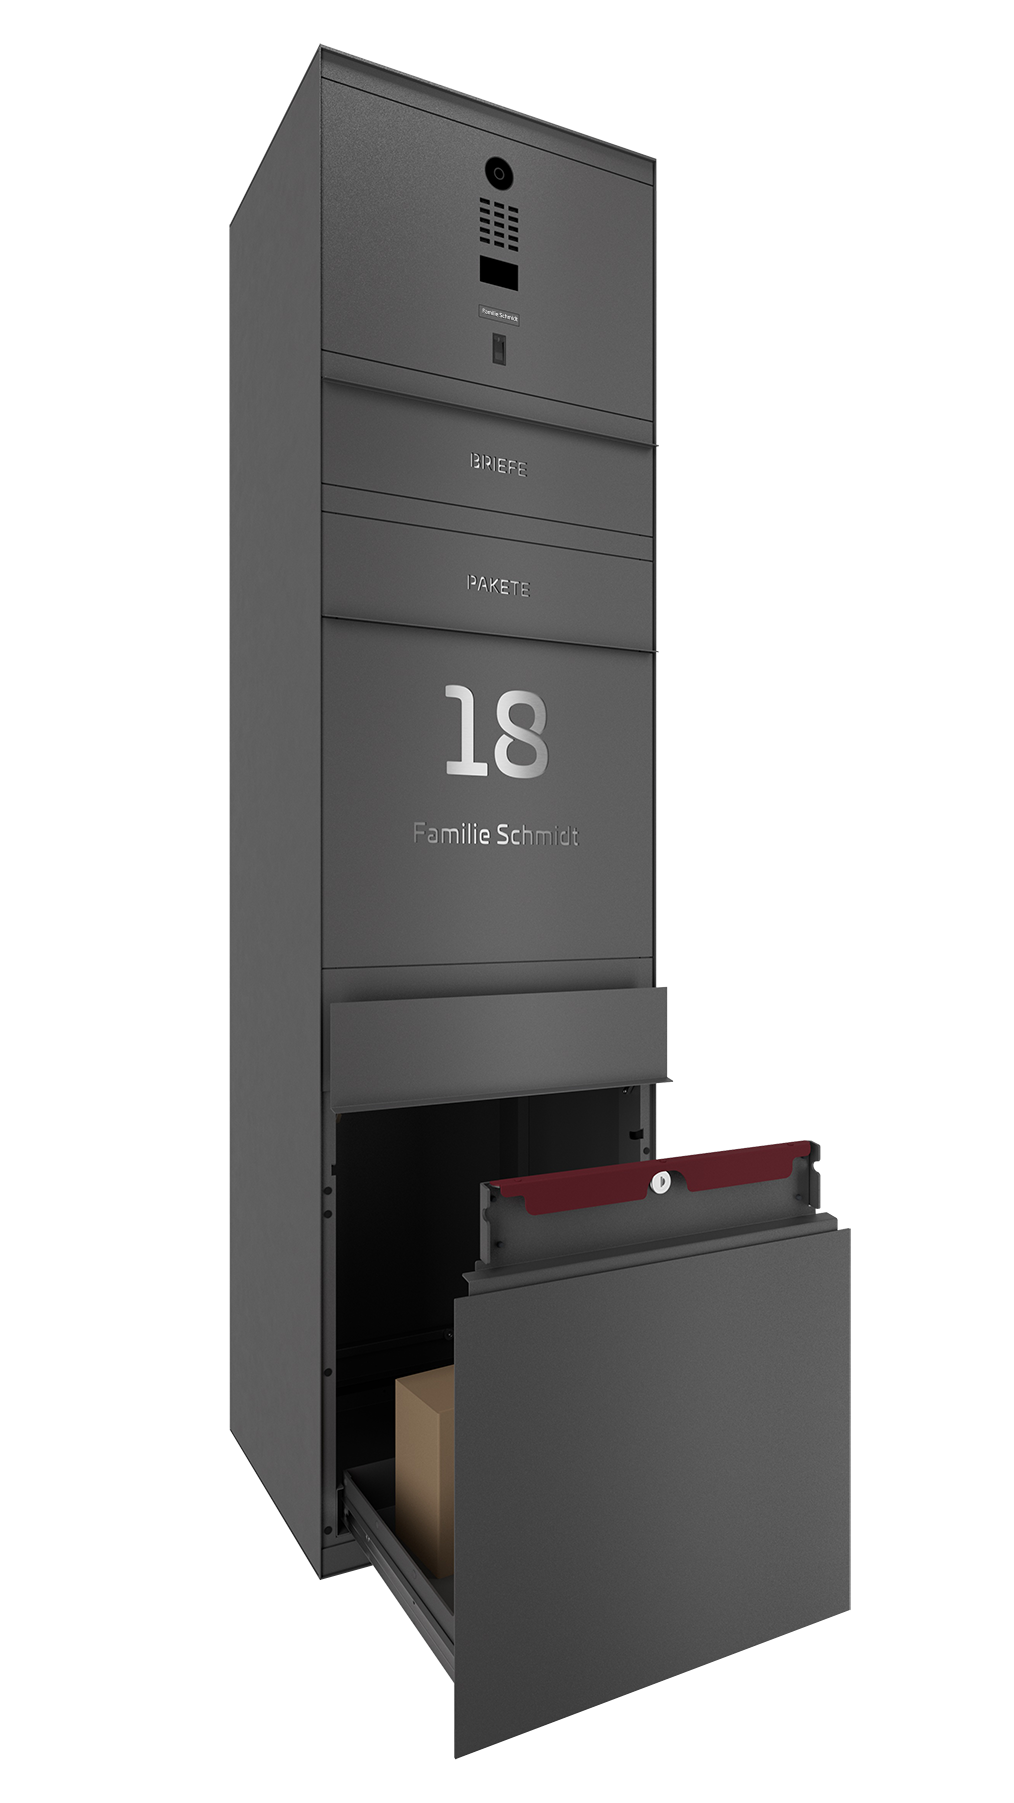 Paketbox mit DoorBird-Videotechnik und Fingerprint DB703